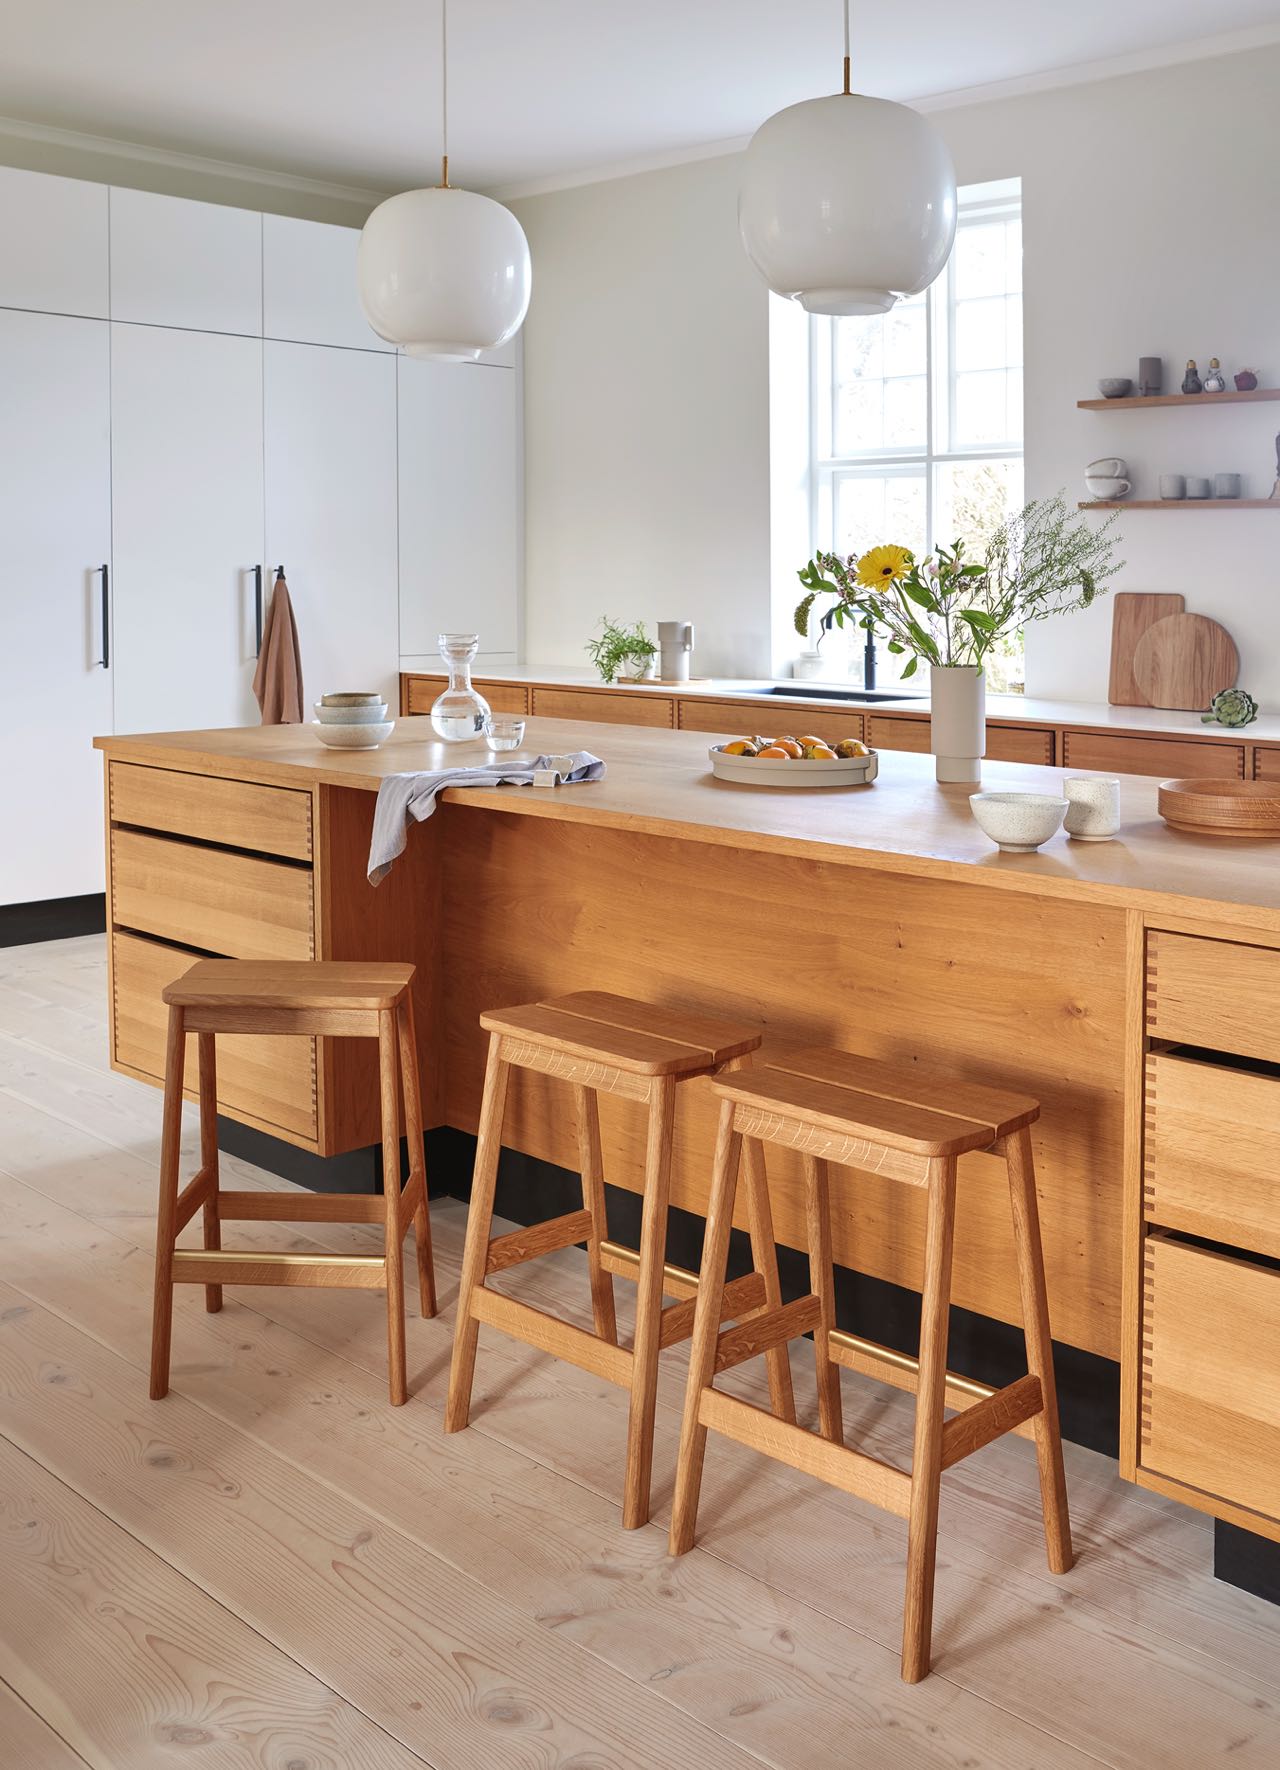 Nachhaltige Möbel, auch für die Küche, findet man beim Label Form & Refine. Ein regelrechtes Statement sind die üppigen weißen Leuchten über der Arbeitsplatte.